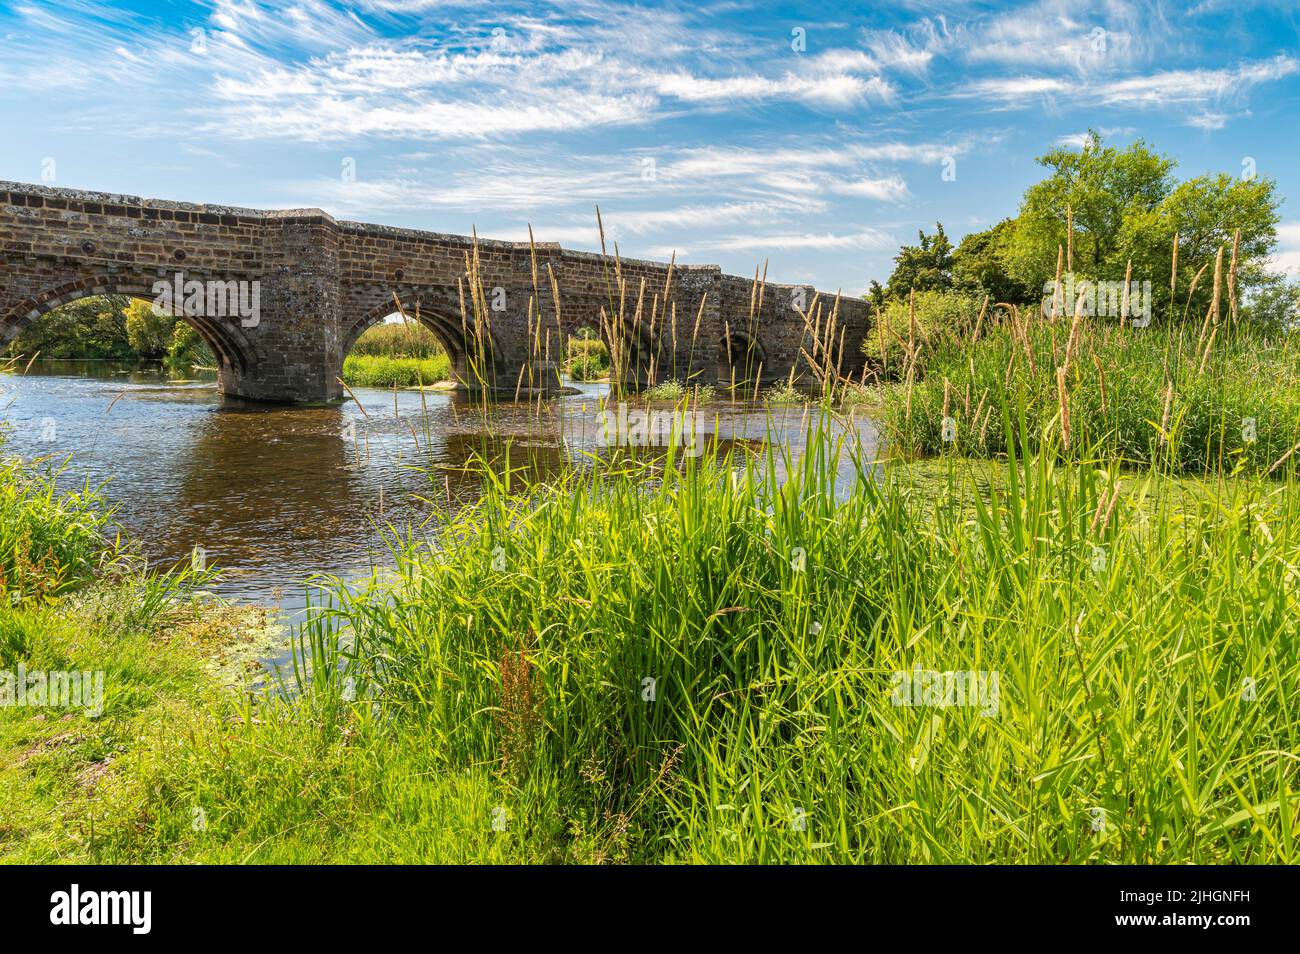 White Mill Bridge è un ponte normanno realizzato con arenaria rossa e pietra calcarea bianca che attraversa il fiume stour con alghe verdi in una giornata di sole. Foto Stock